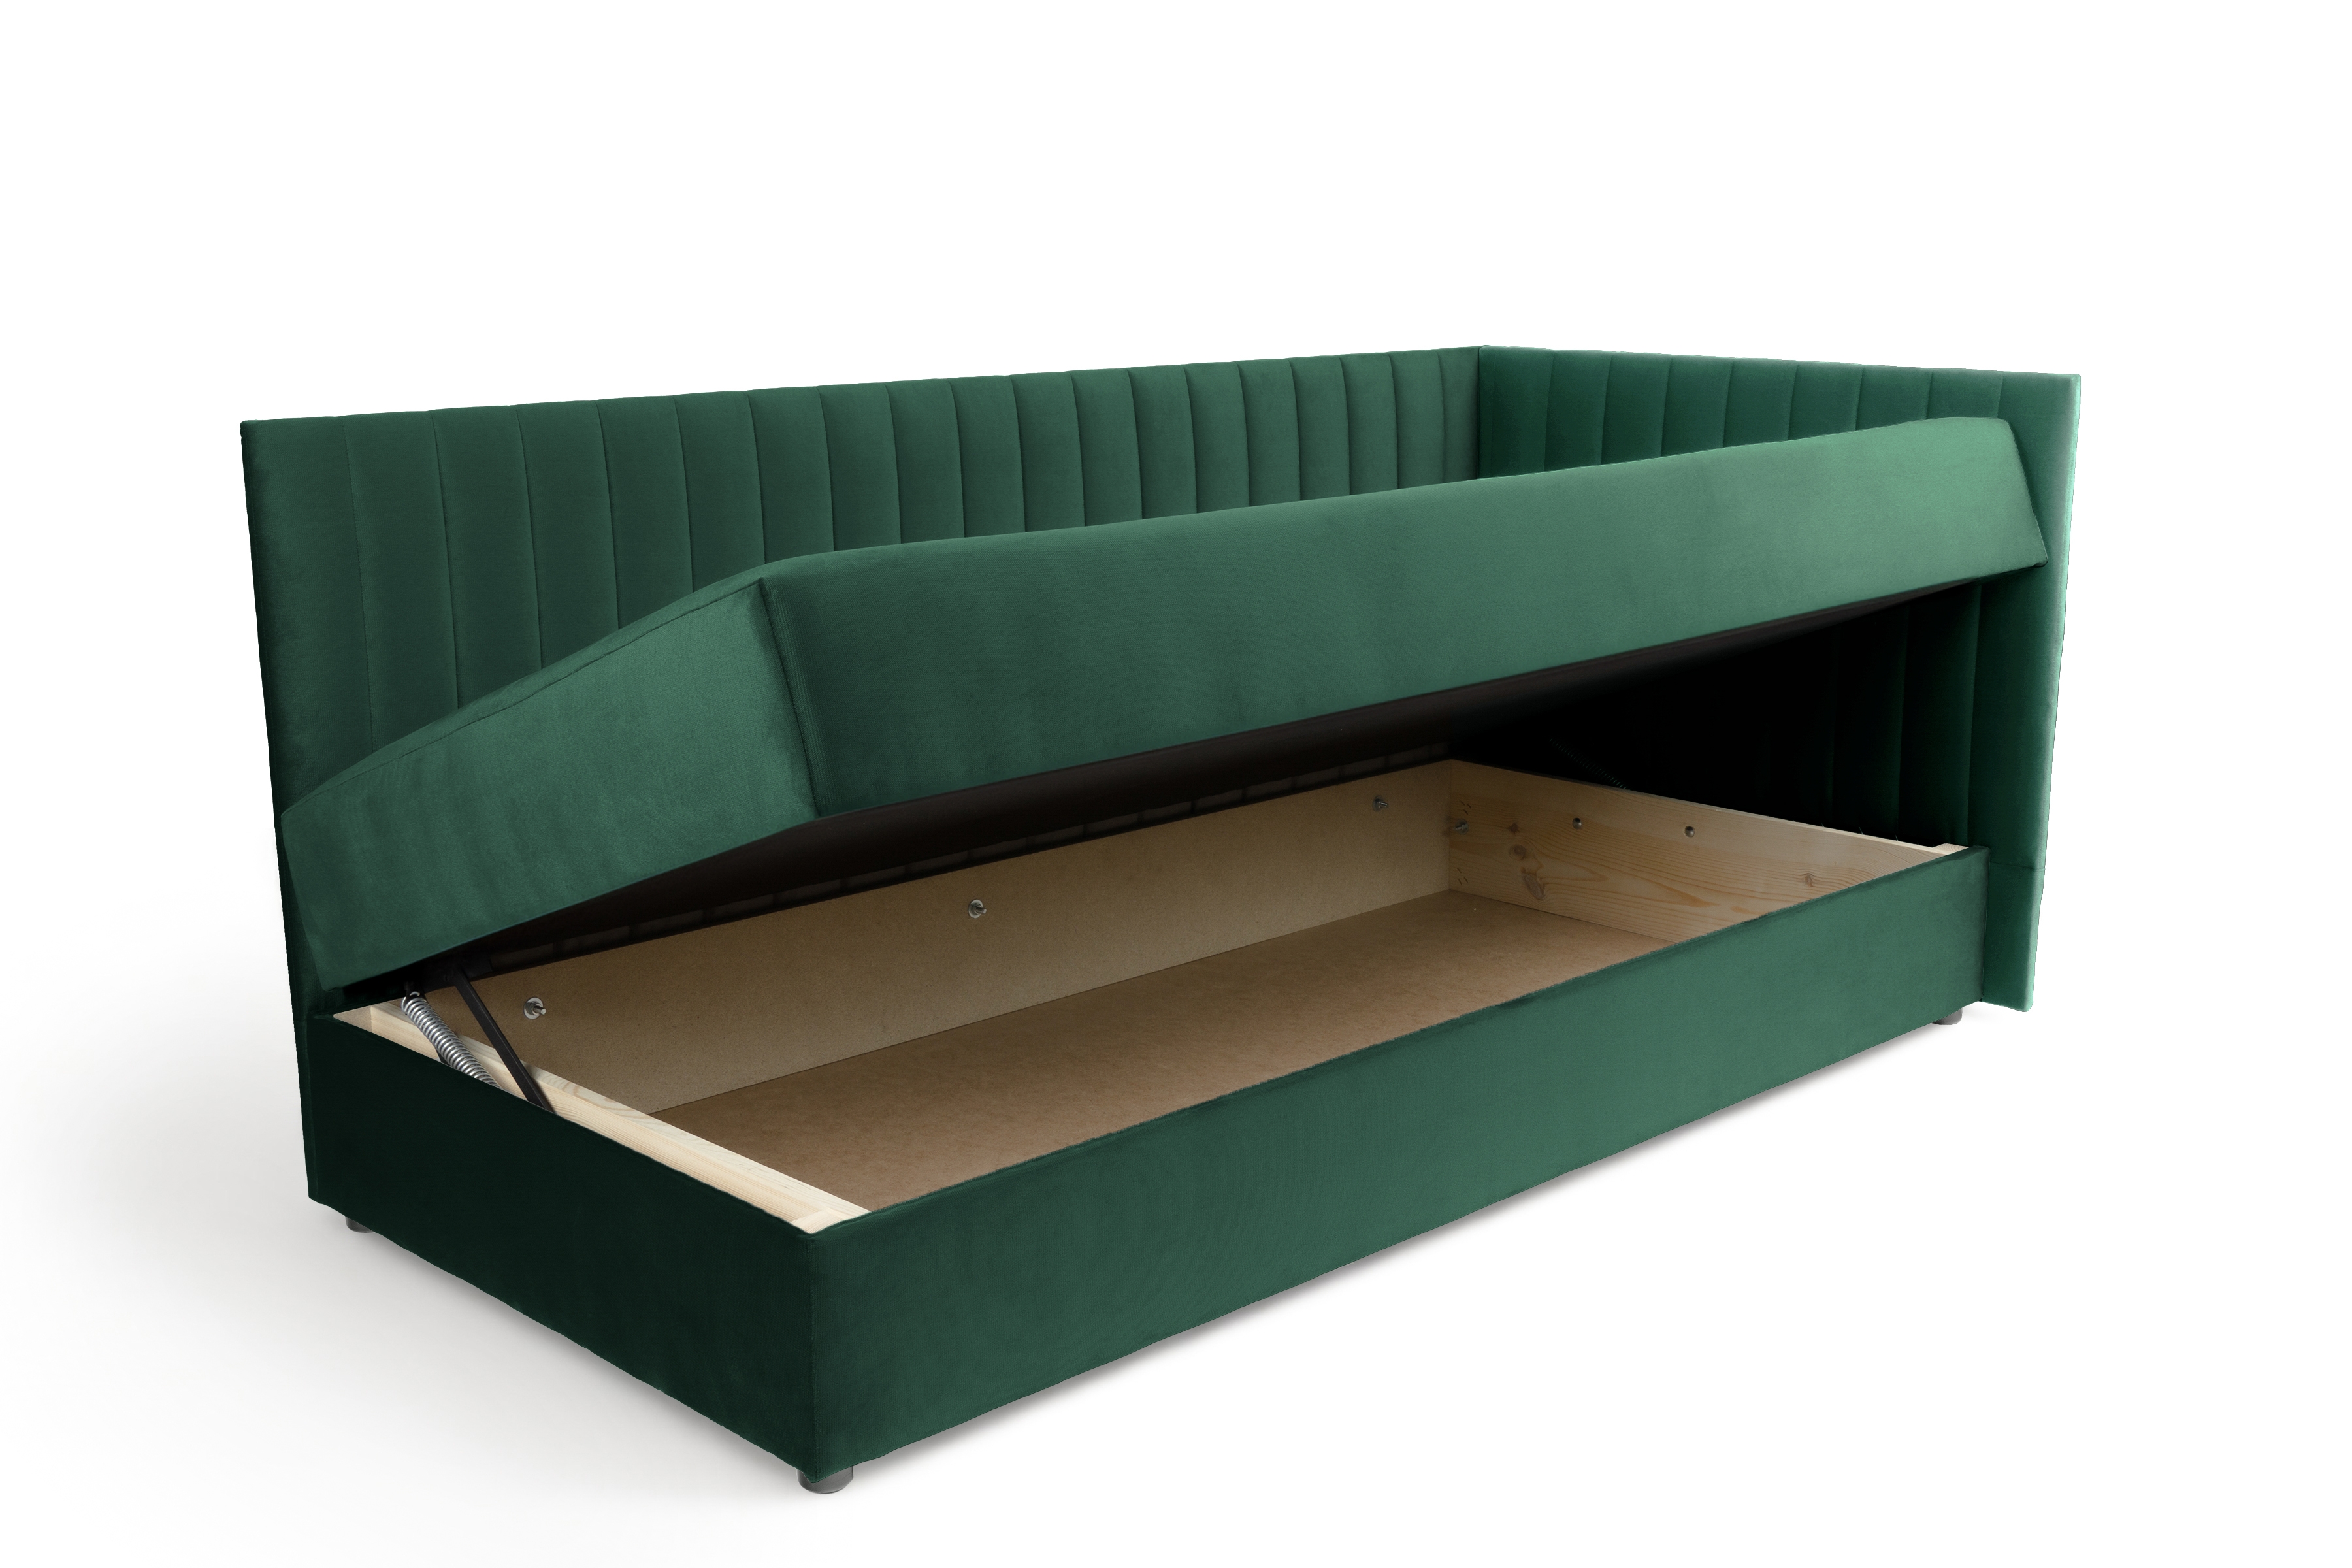 Tapczan/łóżko prawostronne z pojemnikiem Nutri - zielony welur Zanzibar 162, 186x80/80 cm Tapczan/łóżko prawostronne z pojemnikiem Nutri - zielony welur Zanzibar 162, 186x80/80 cm